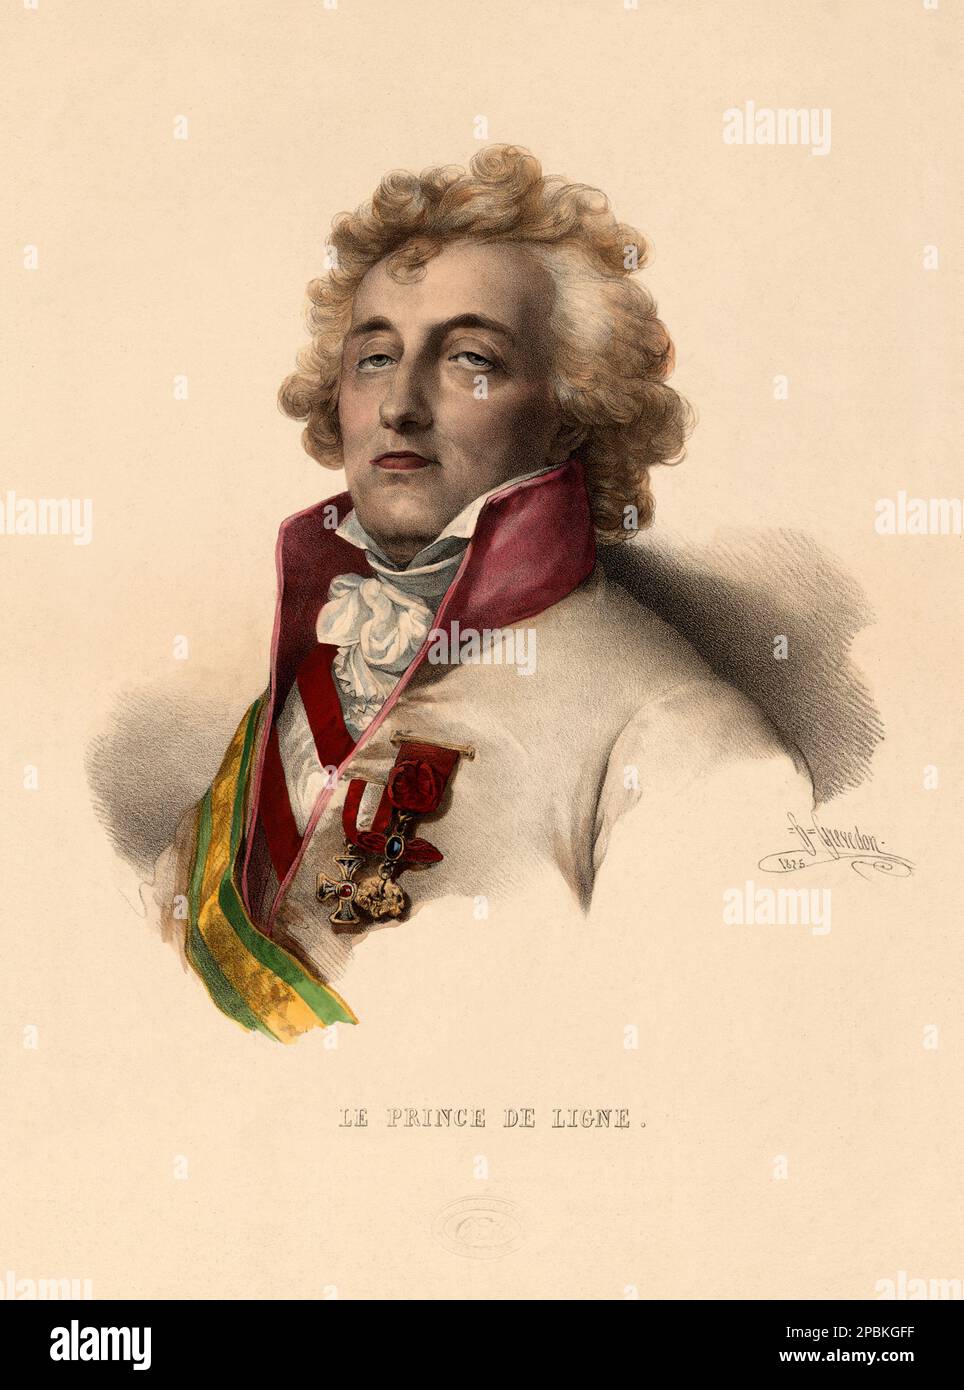 1825 , FRANCIA : il Principe Carlo Giuseppe DE LIGNE (1735-1814). Ritratto inciso da H. Grevedon . Prince de ligne pioniere del fly, che era a bordo del pallone 'la Fresselle', 19 gennaio 1784, con Joseph Montgolfier e Pilâtre de Rozier . - FRANCIA - FRANCIA - illustrazione - incisione - RITRATTO - RITRATTO - NOBILTÀ - NOBILI - Nobiltà - colletto - colletto - jabots - medaglie - medaglie - medaglia - PIONIERE DEL volo uomo - Balloon - MONGOLFIERA - MONGOLFIERE - AERONAUTICA - AIRCRAFT - Balloon Ascensions - ENSIASCONISTA - ACENSIONI IN PALLONE - ASCENSIONE ---- ARCHIVIO GBB Foto Stock